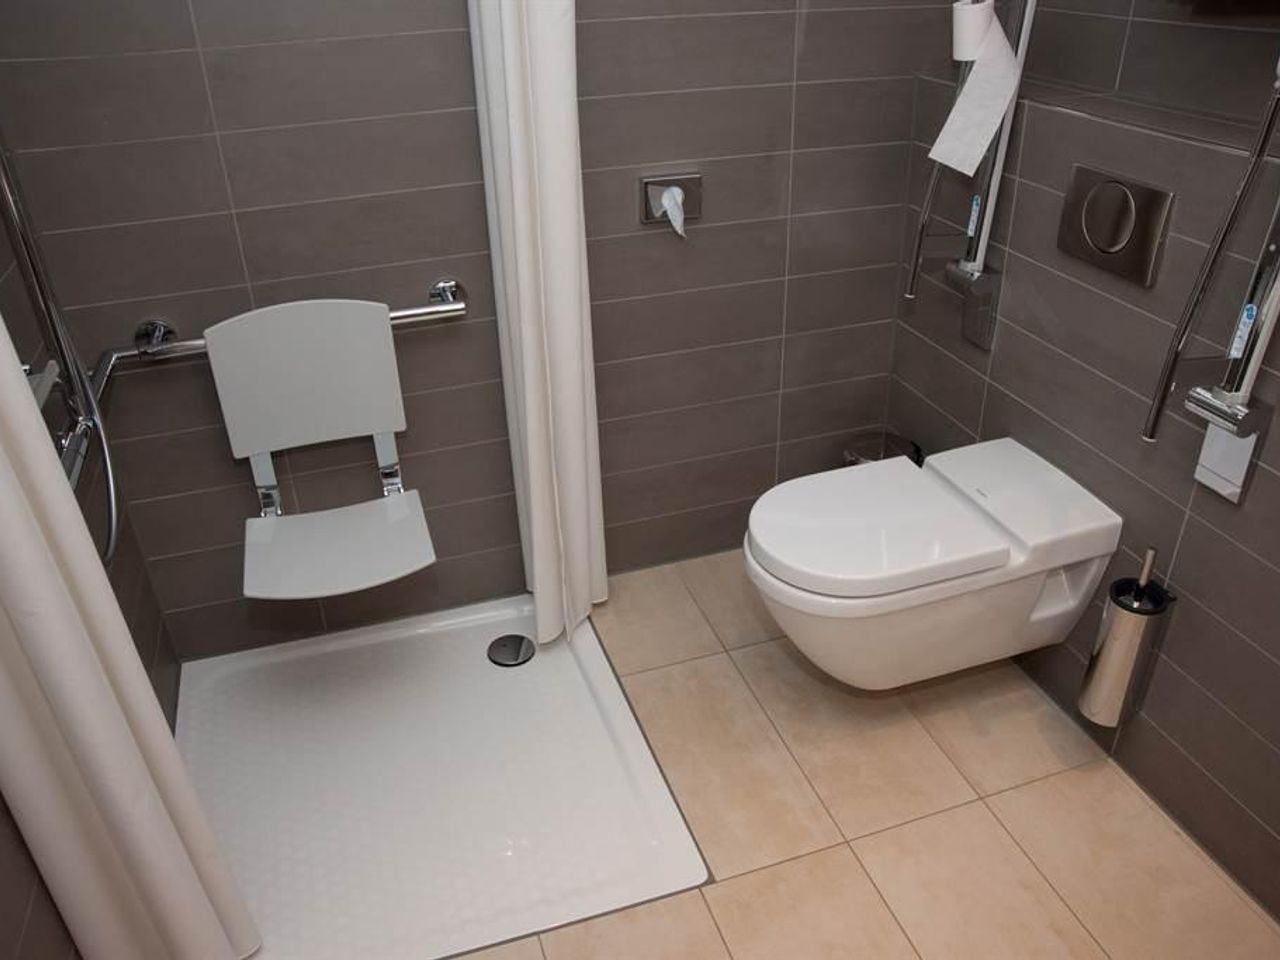 Bild vergrößern: barrierefreies Badezimmer Dusche und WC